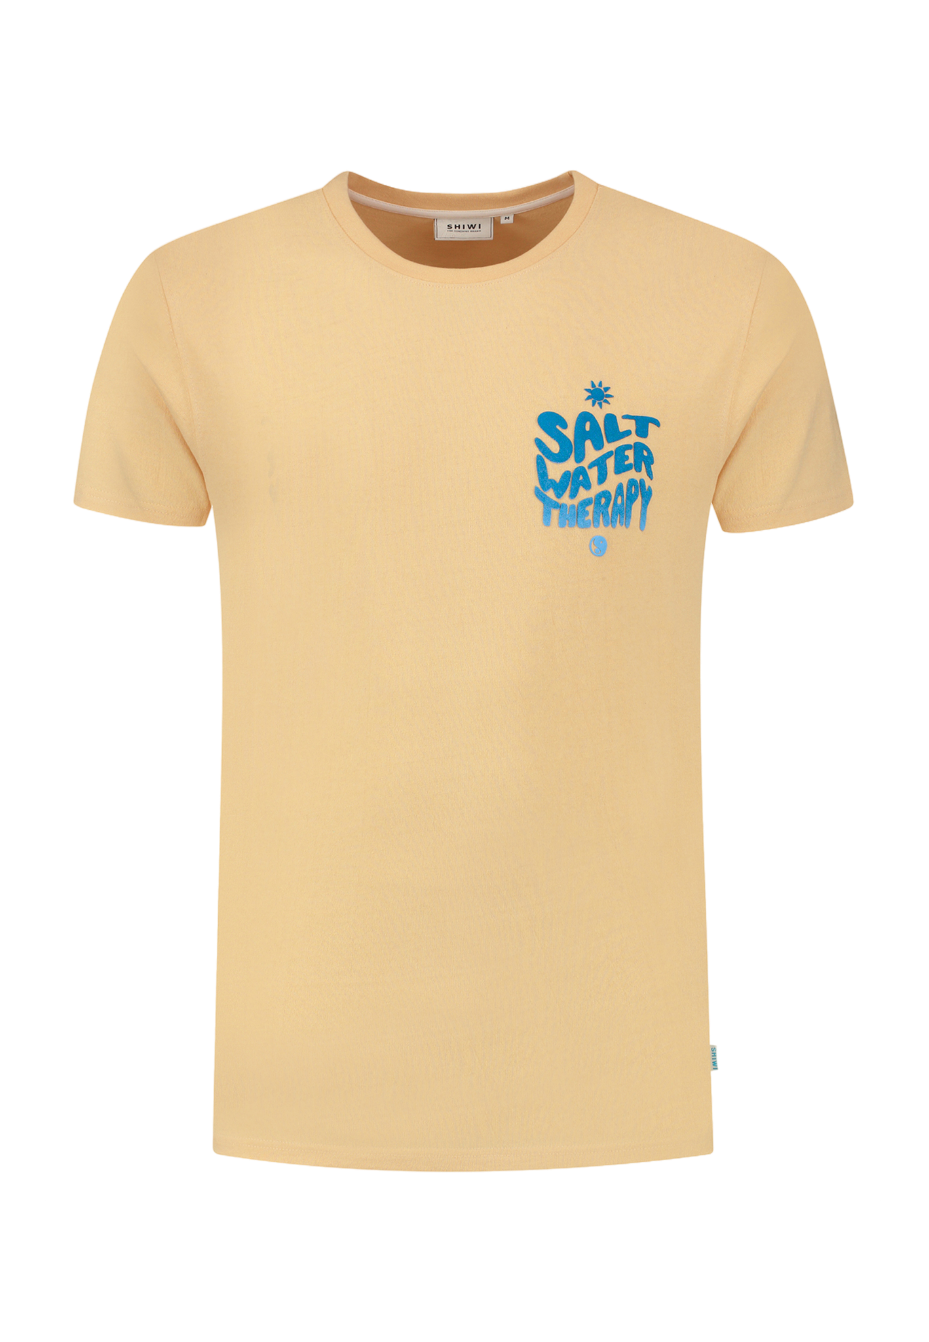 Shiwi - T-Shirt Salt Water Cayman Peach - Heren - Maat XL - Regular-fit